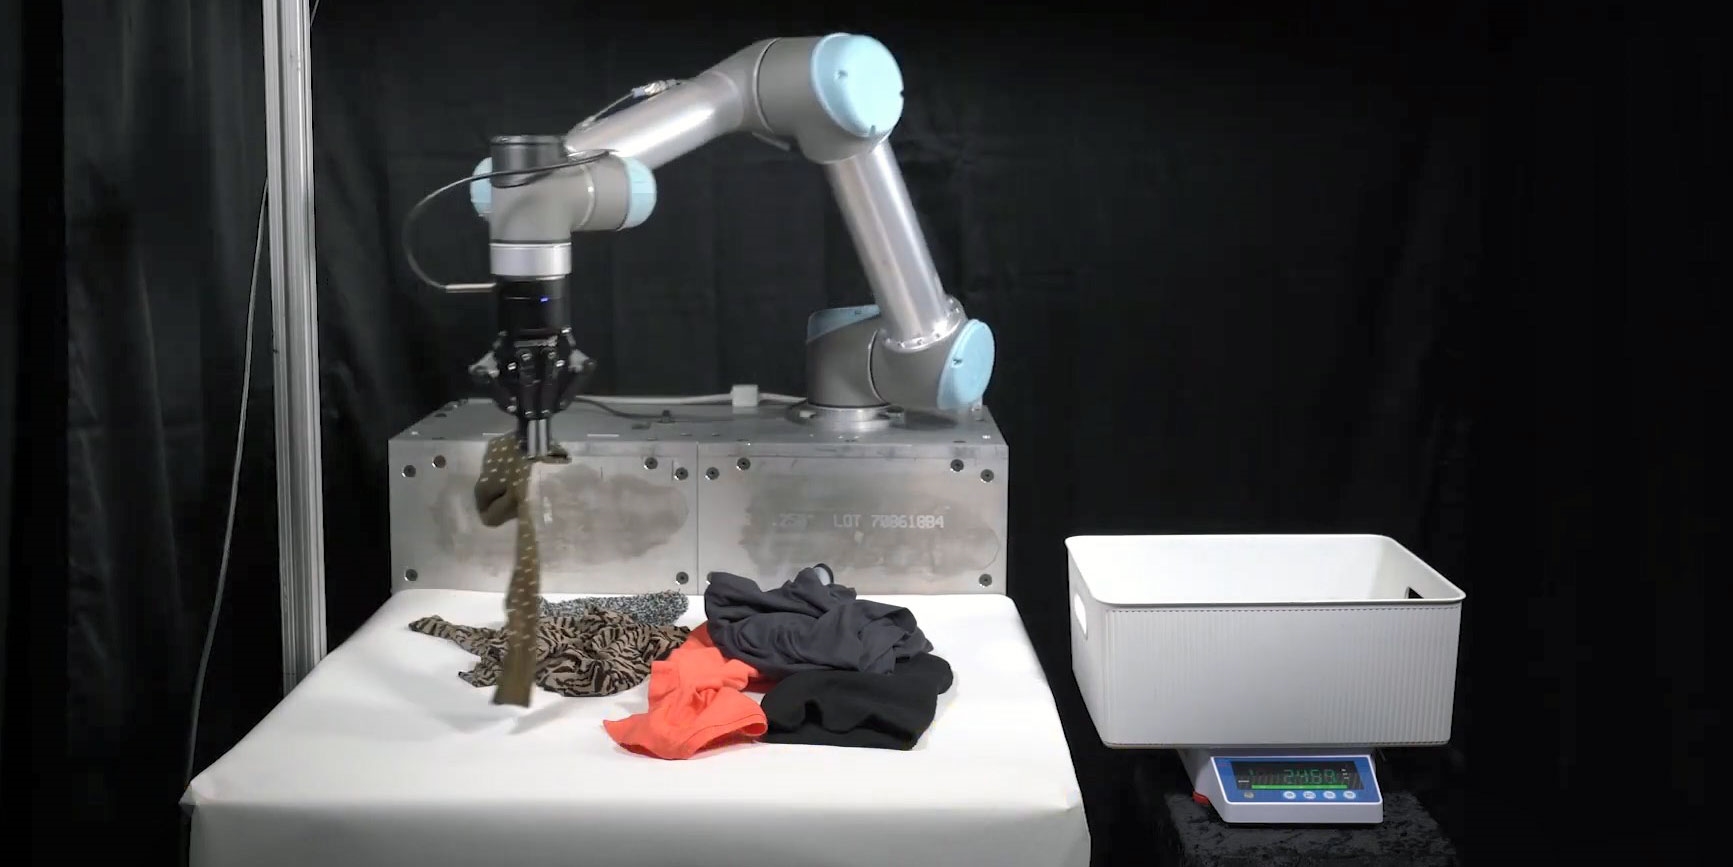 tohoto robota budete chtít do ložnice. díky kameře a ai dokáže posbírat rozházené oblečení